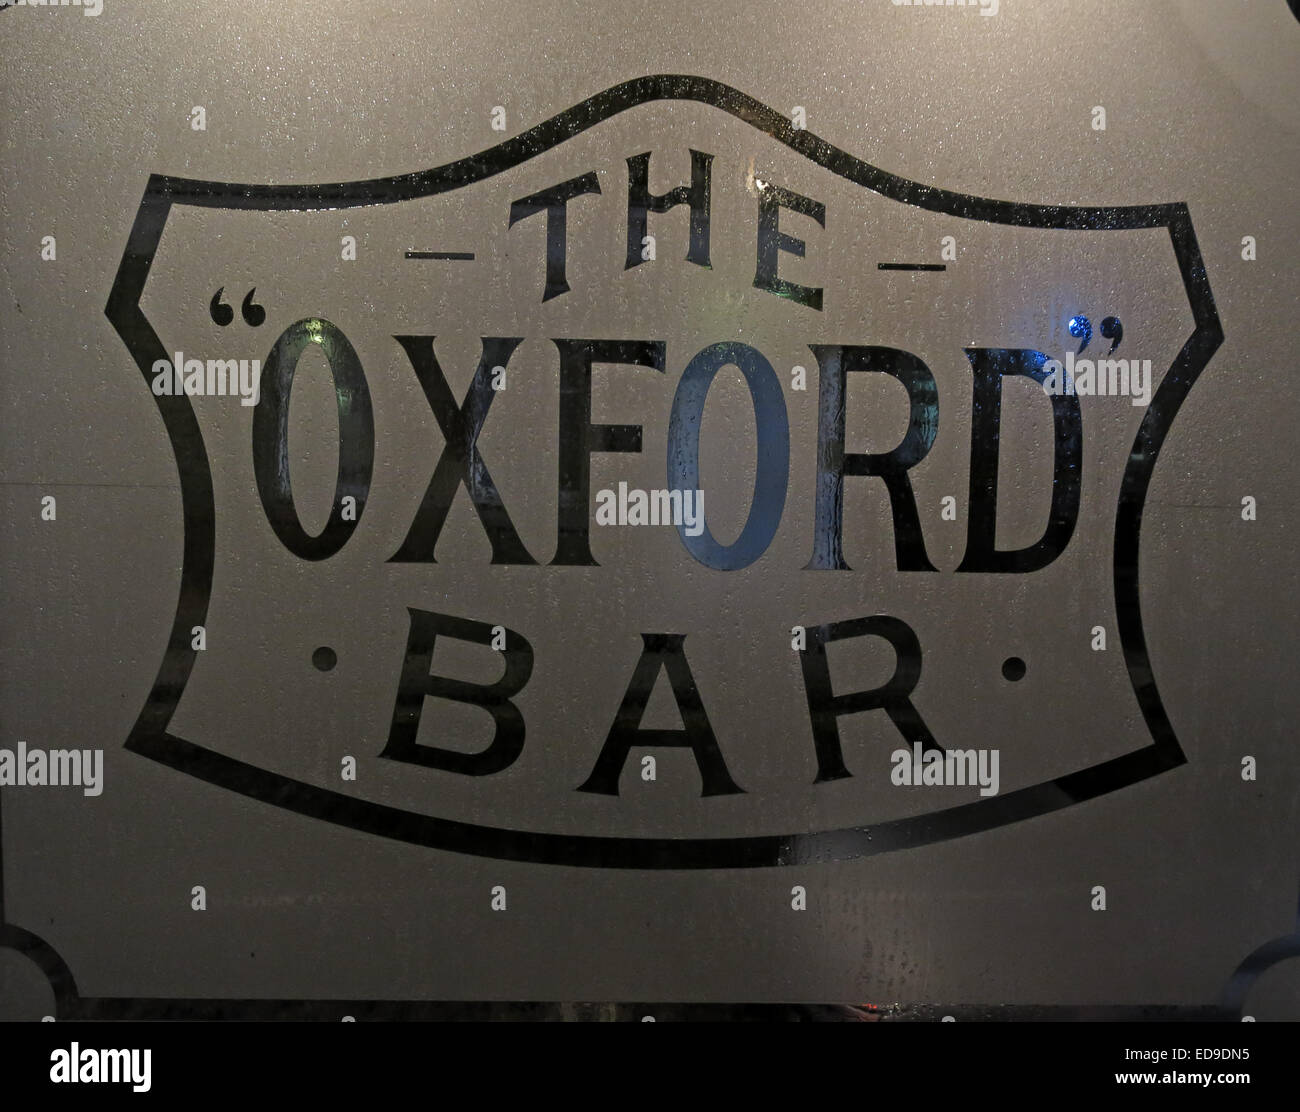 Finestra della barra di Oxford, giovani St, New Town, Edimburgo, Scozia - Featured in Ian Rankin ispettore dell serie Rebus Foto Stock